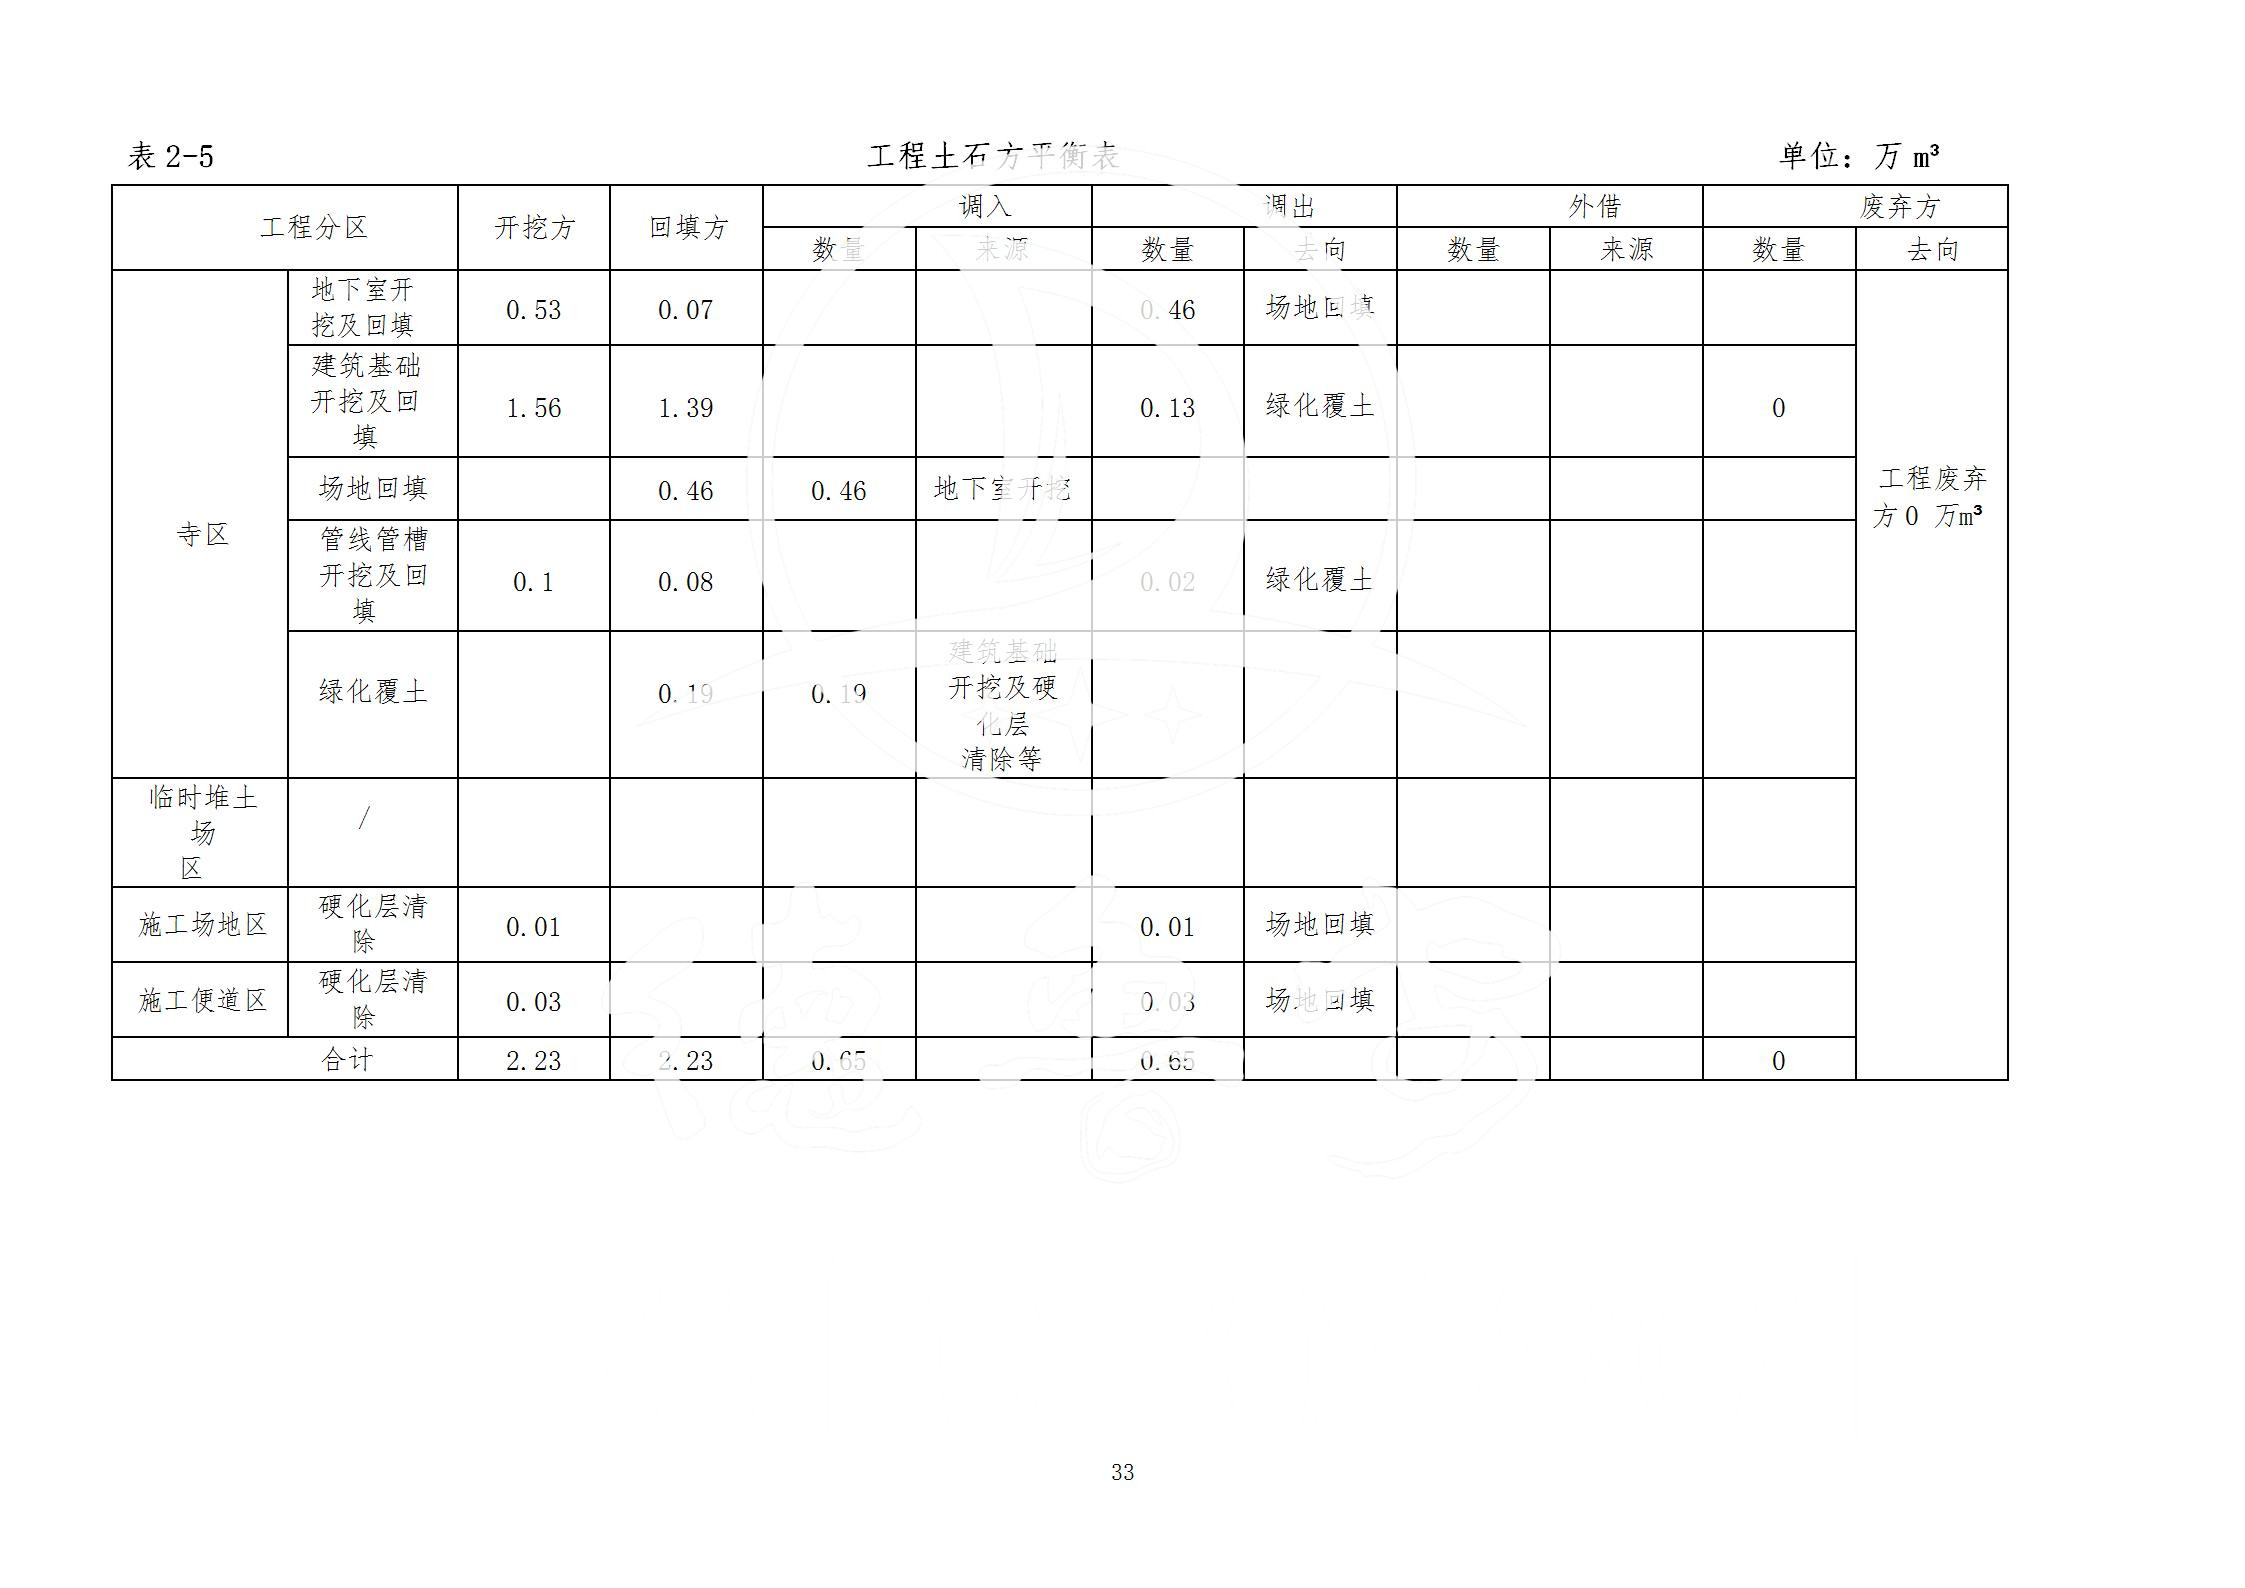 广东省大圣寺水土保持报告  修改稿5_33.jpg